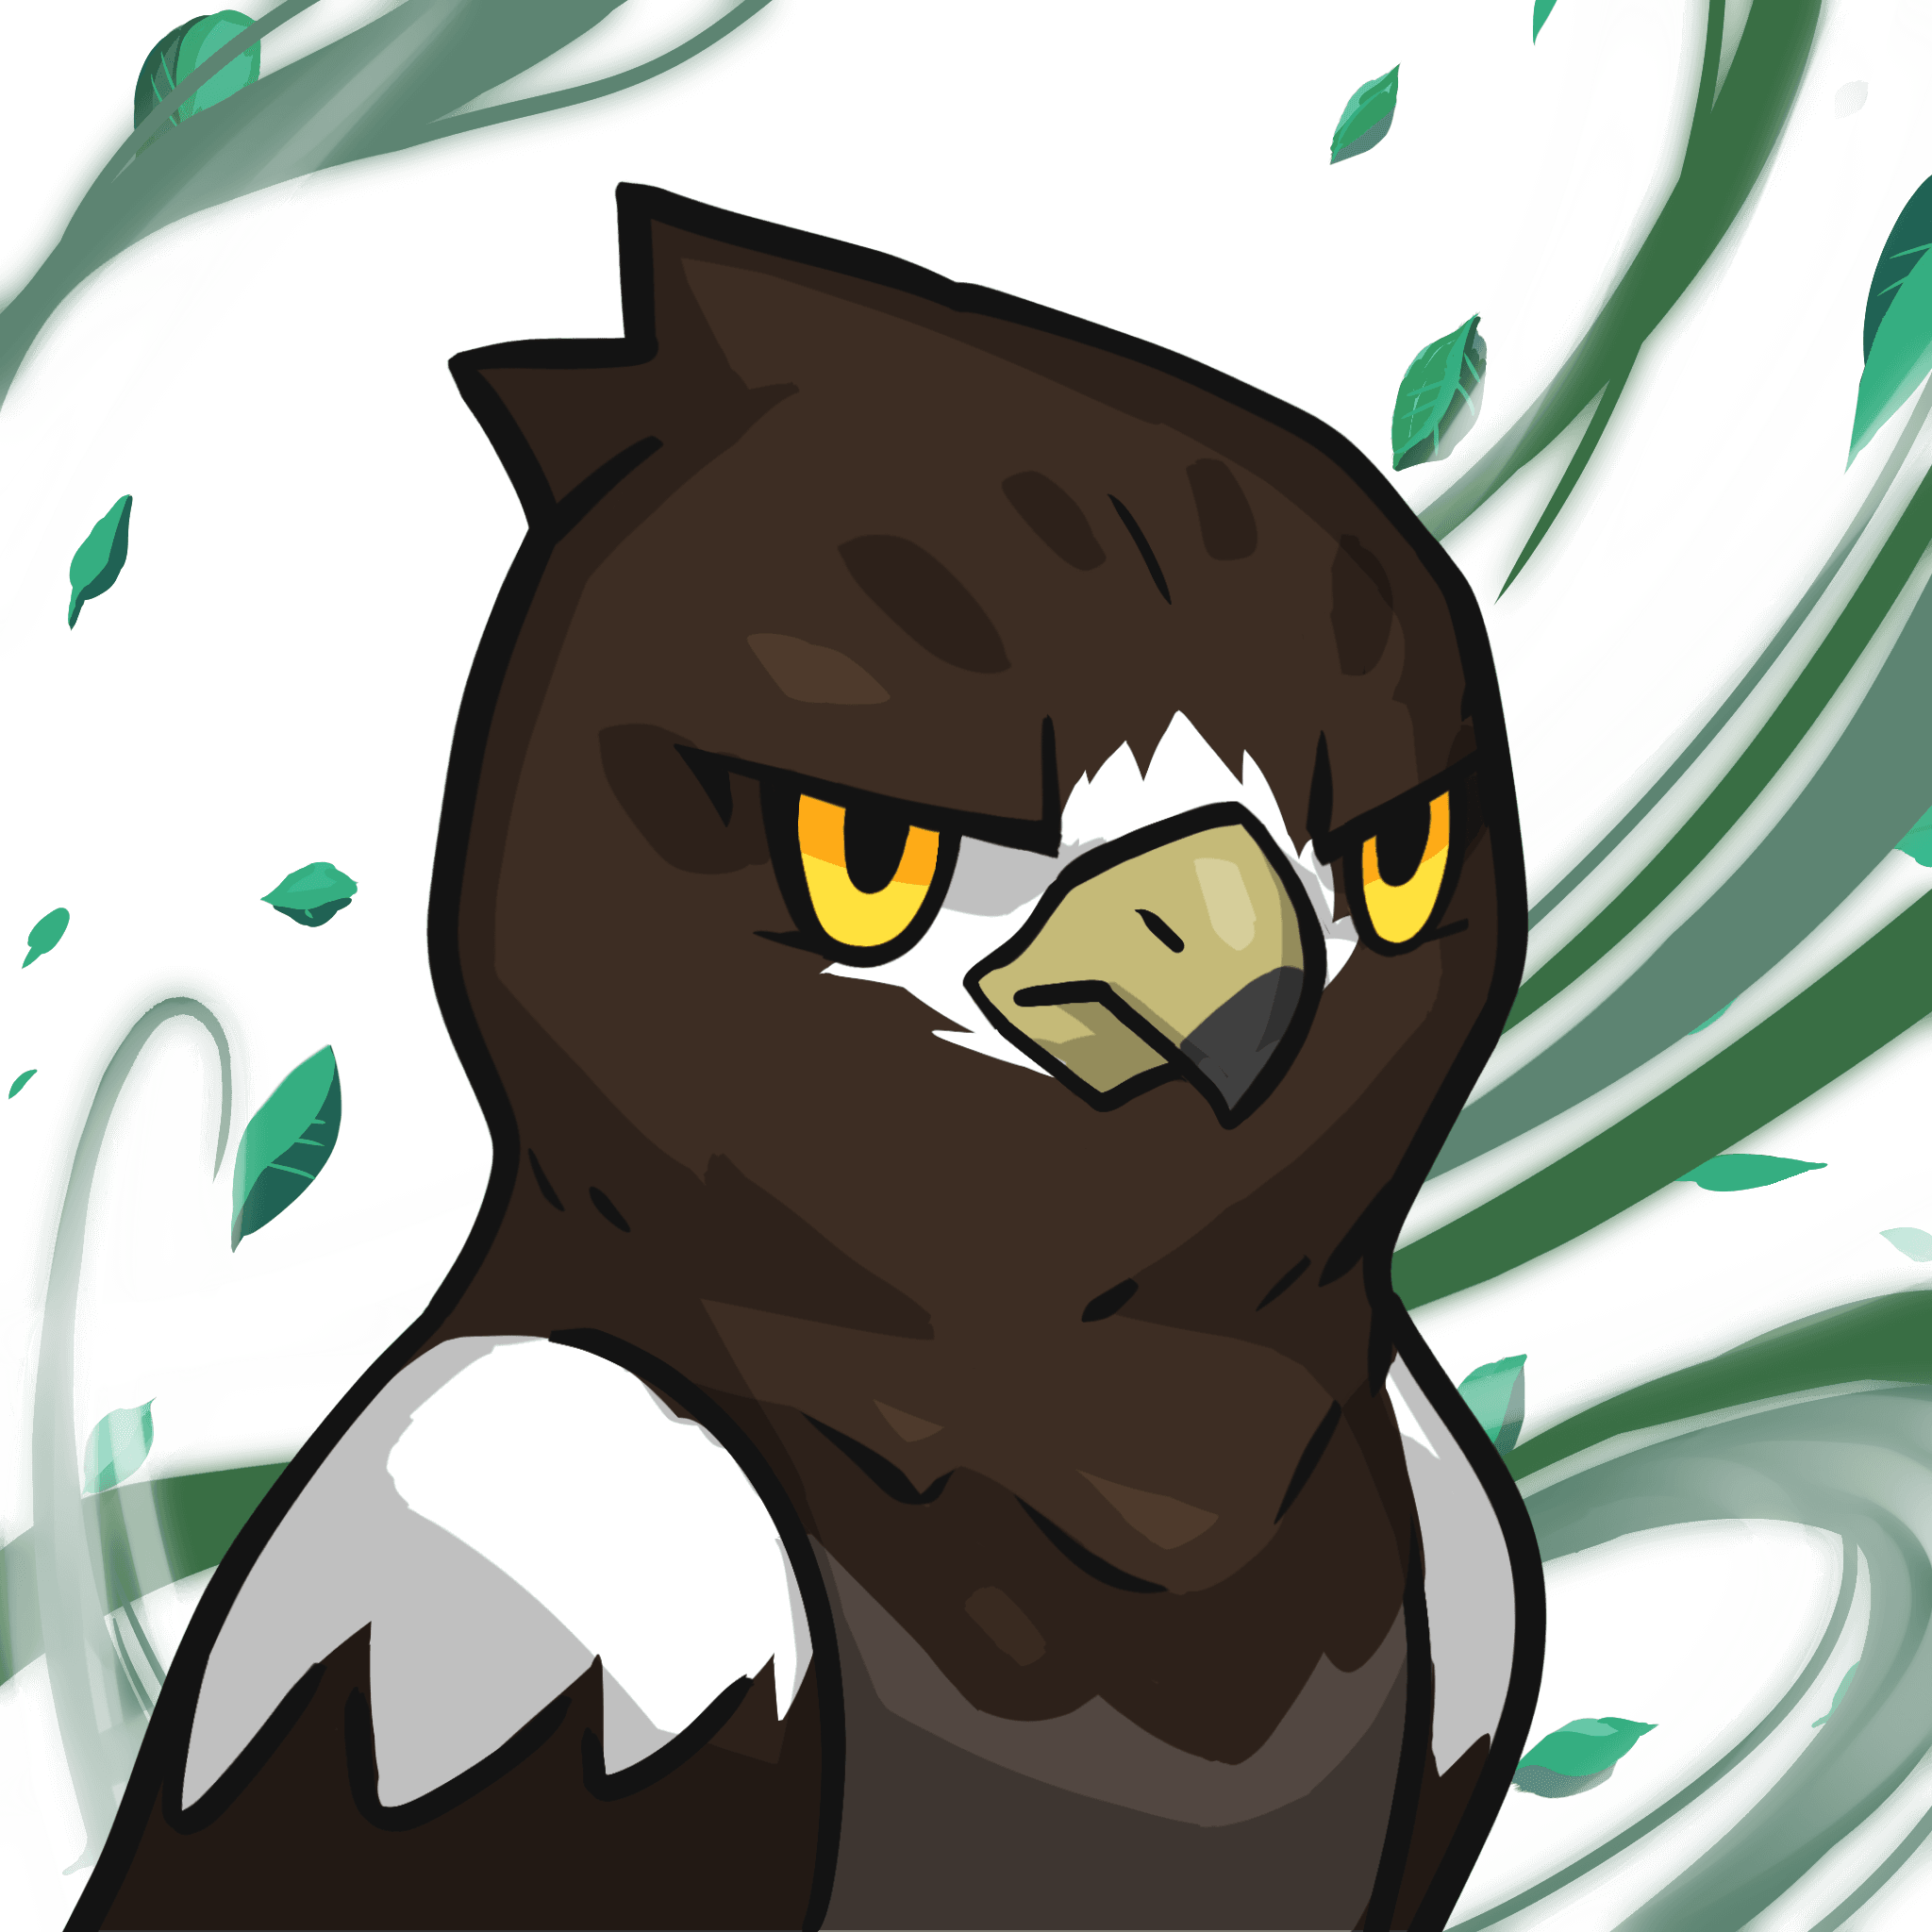 Narukami-Steller_s sea eagle #07772